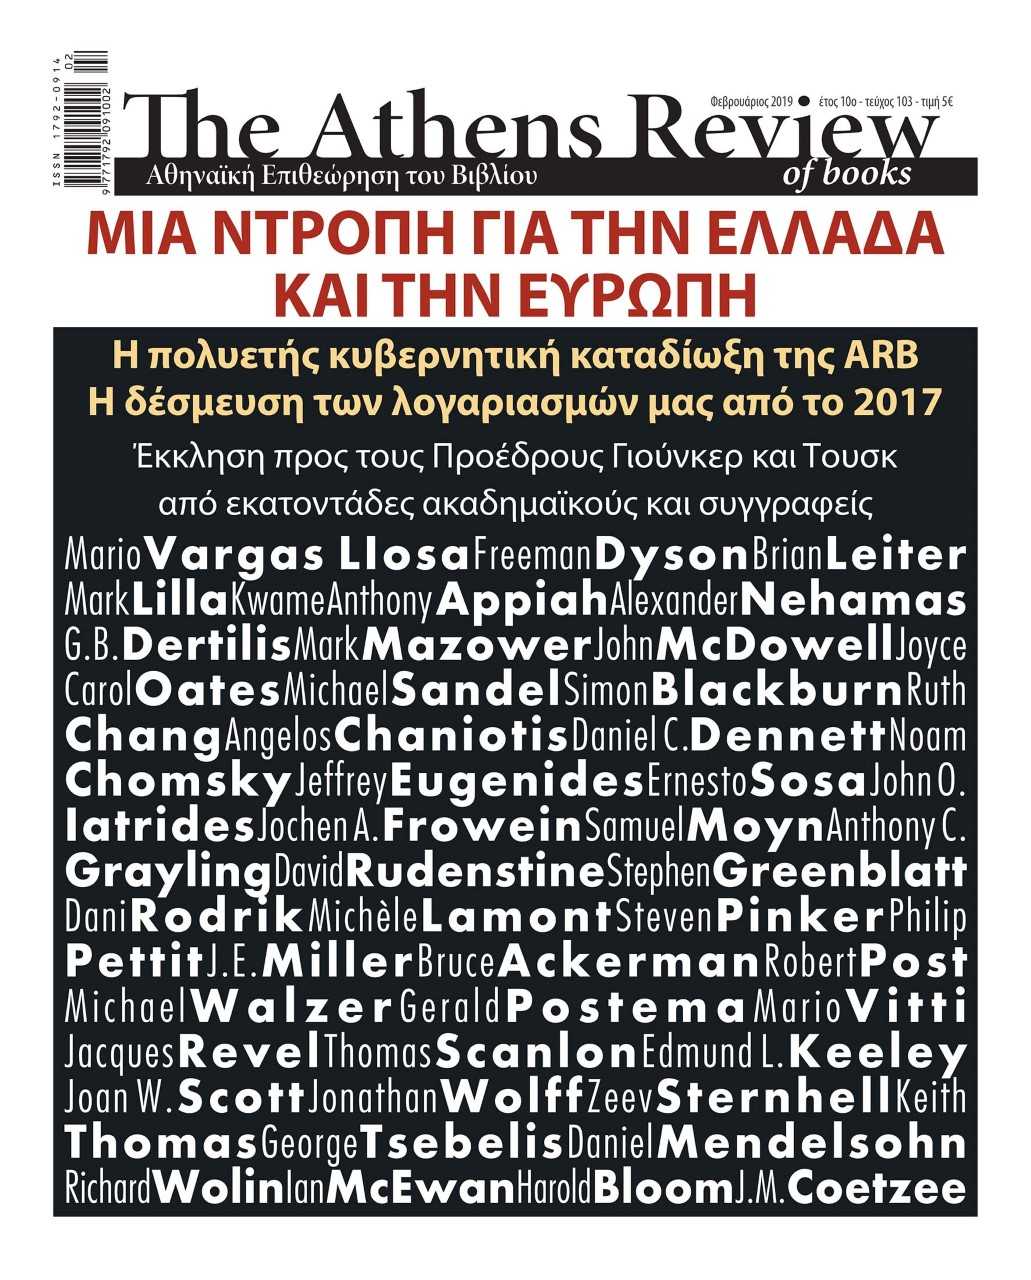 Εκκληση σε Γιούνκερ-Τουσκ από ακαδημαϊκούς και συγγραφείς υπέρ της Athens Review of Books